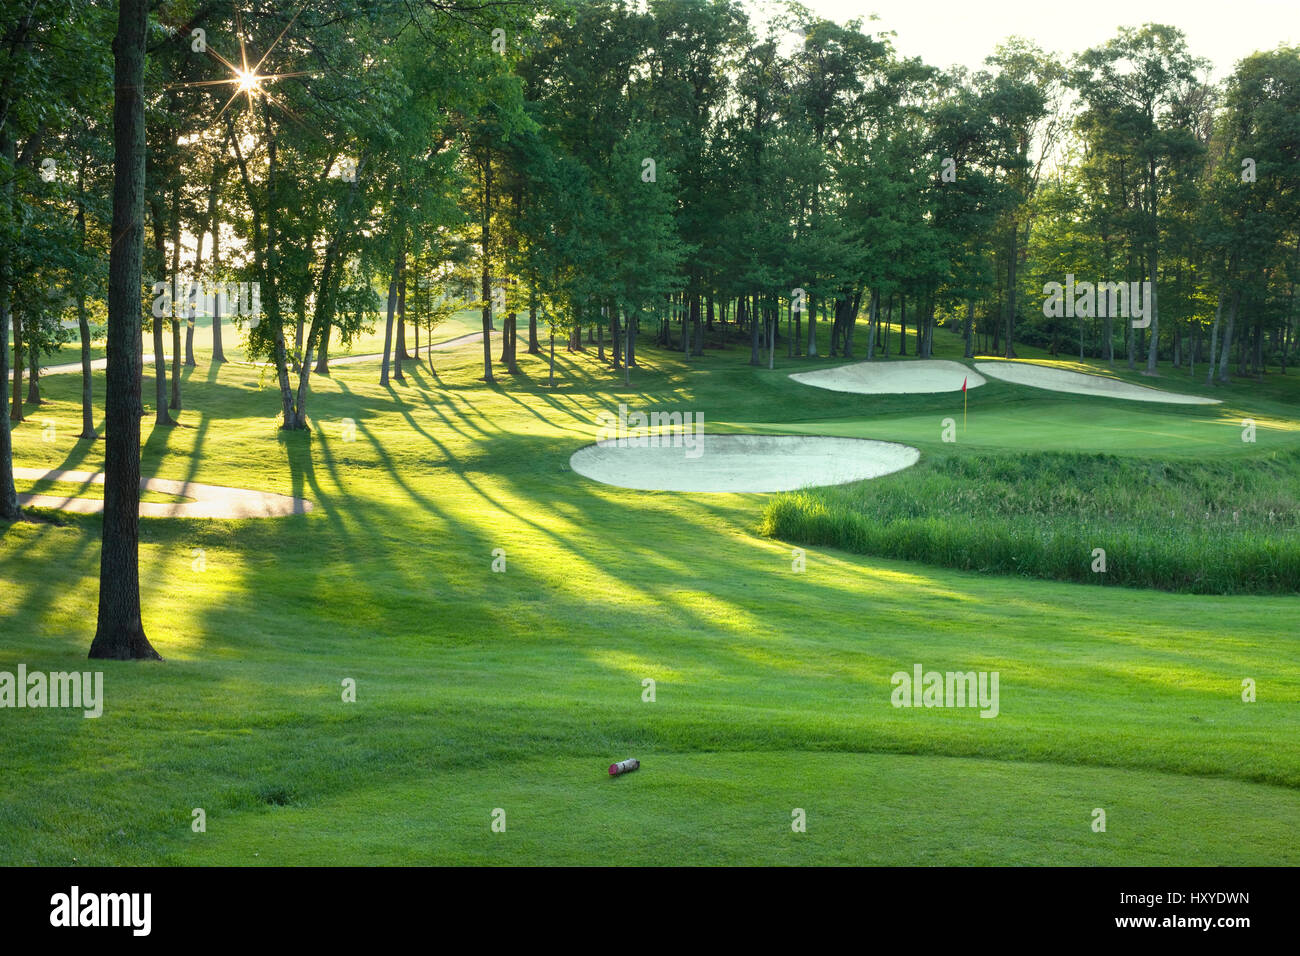 Golf-Abschlag und grün mit Bäumen und fallen in der späten Nachmittag Sonne Stockfoto